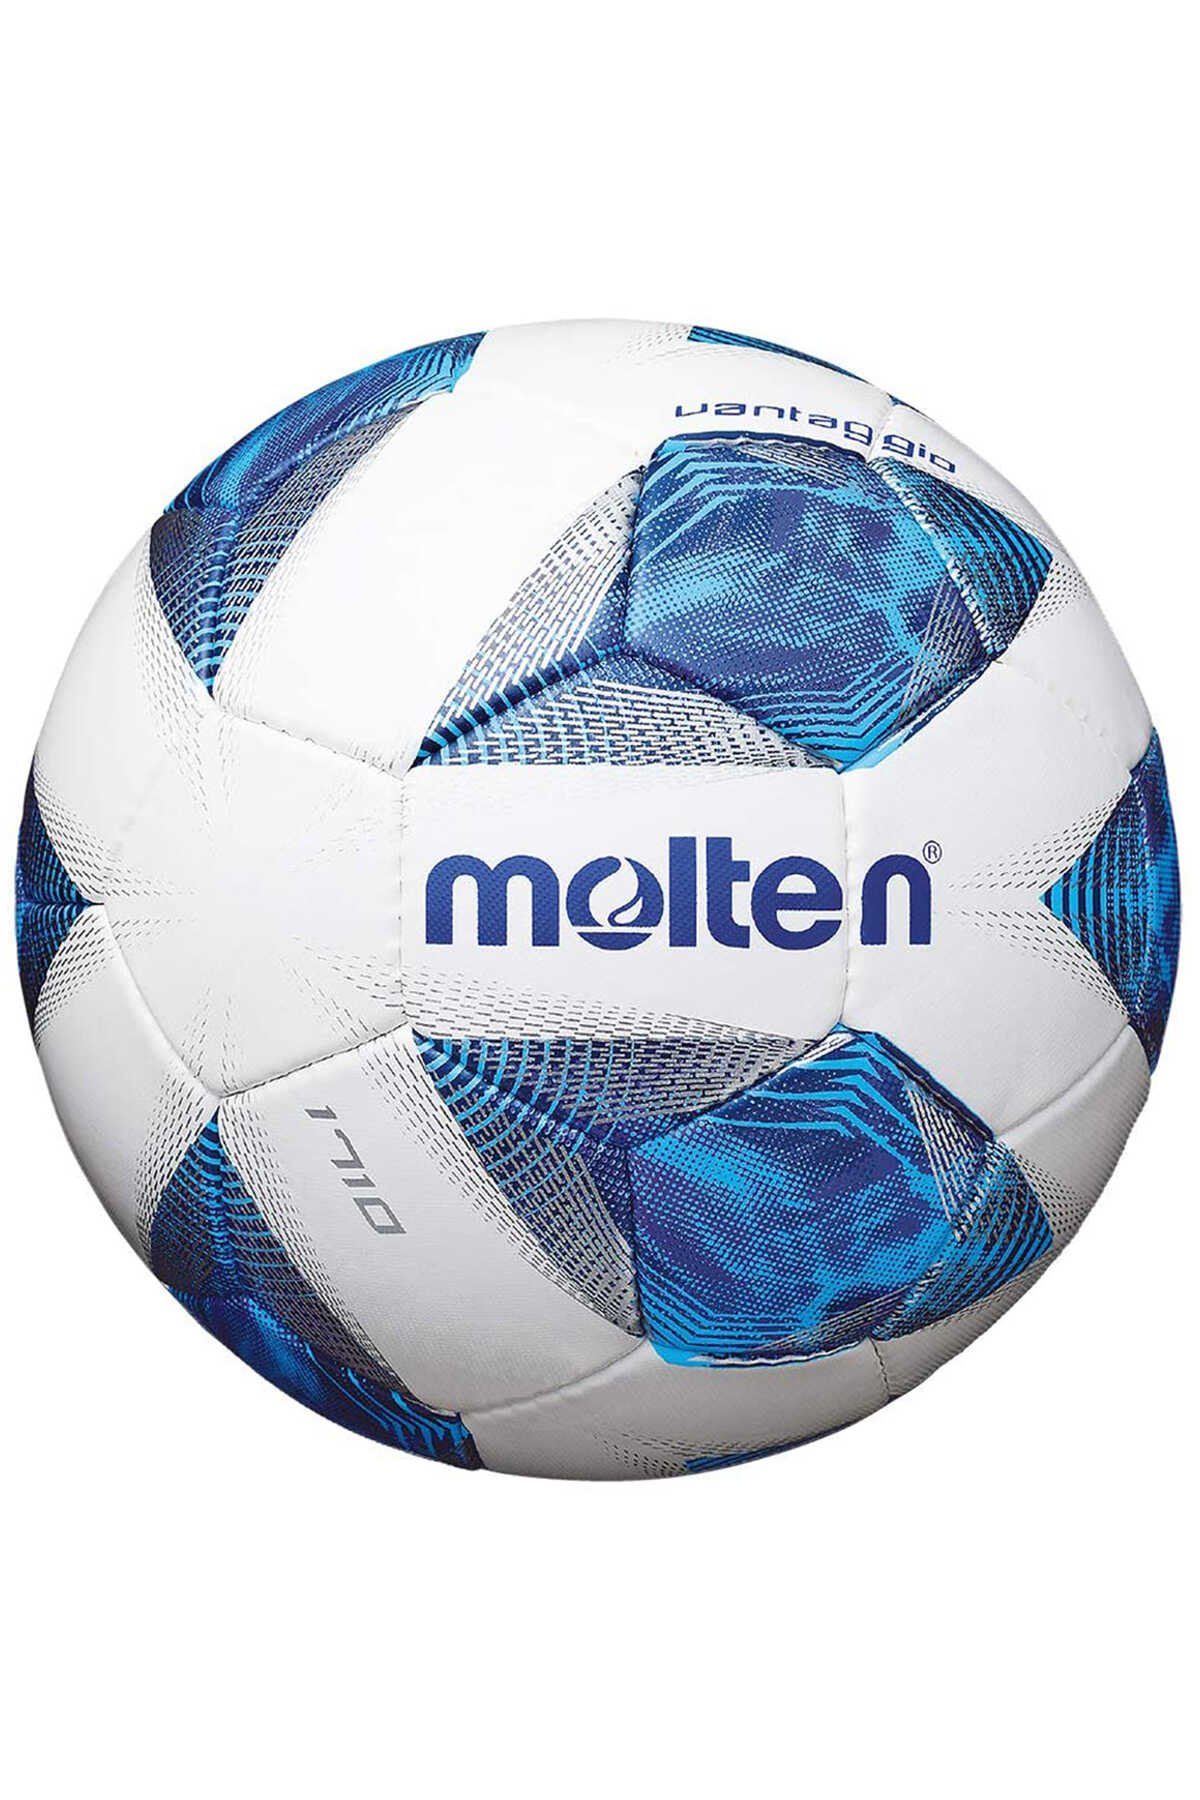 Molten - Molten 3 Numara Futbol Topu Mavi / Beyaz